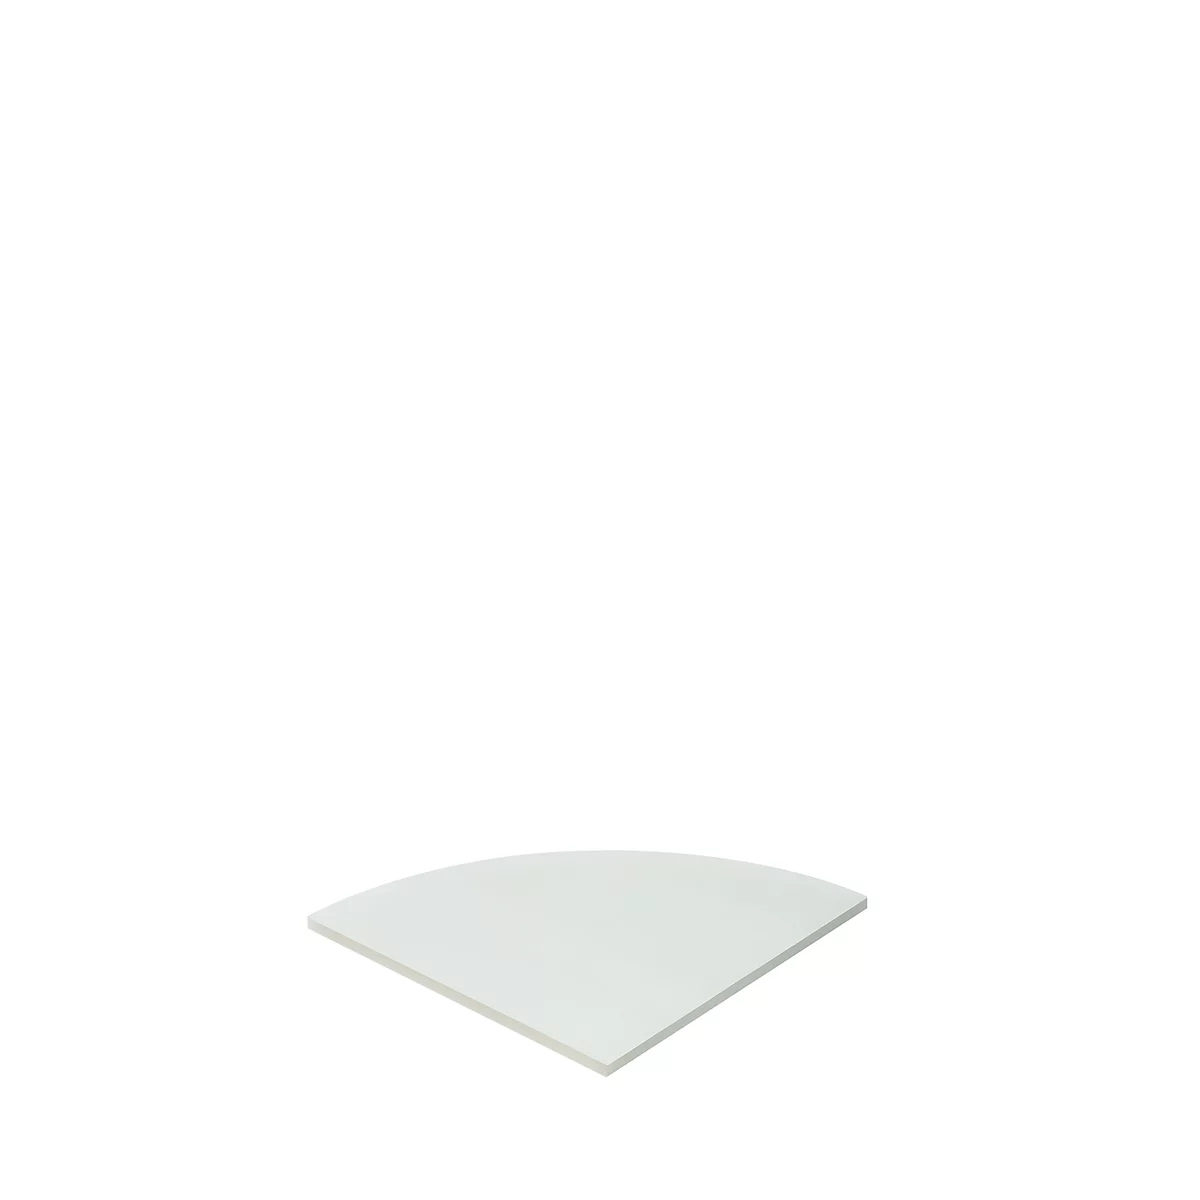 Schäfer Shop Select Panel de unión MOXXO IQ, 90°, cuarto de círculo, ancho 800 x fondo 800 mm, gris claro